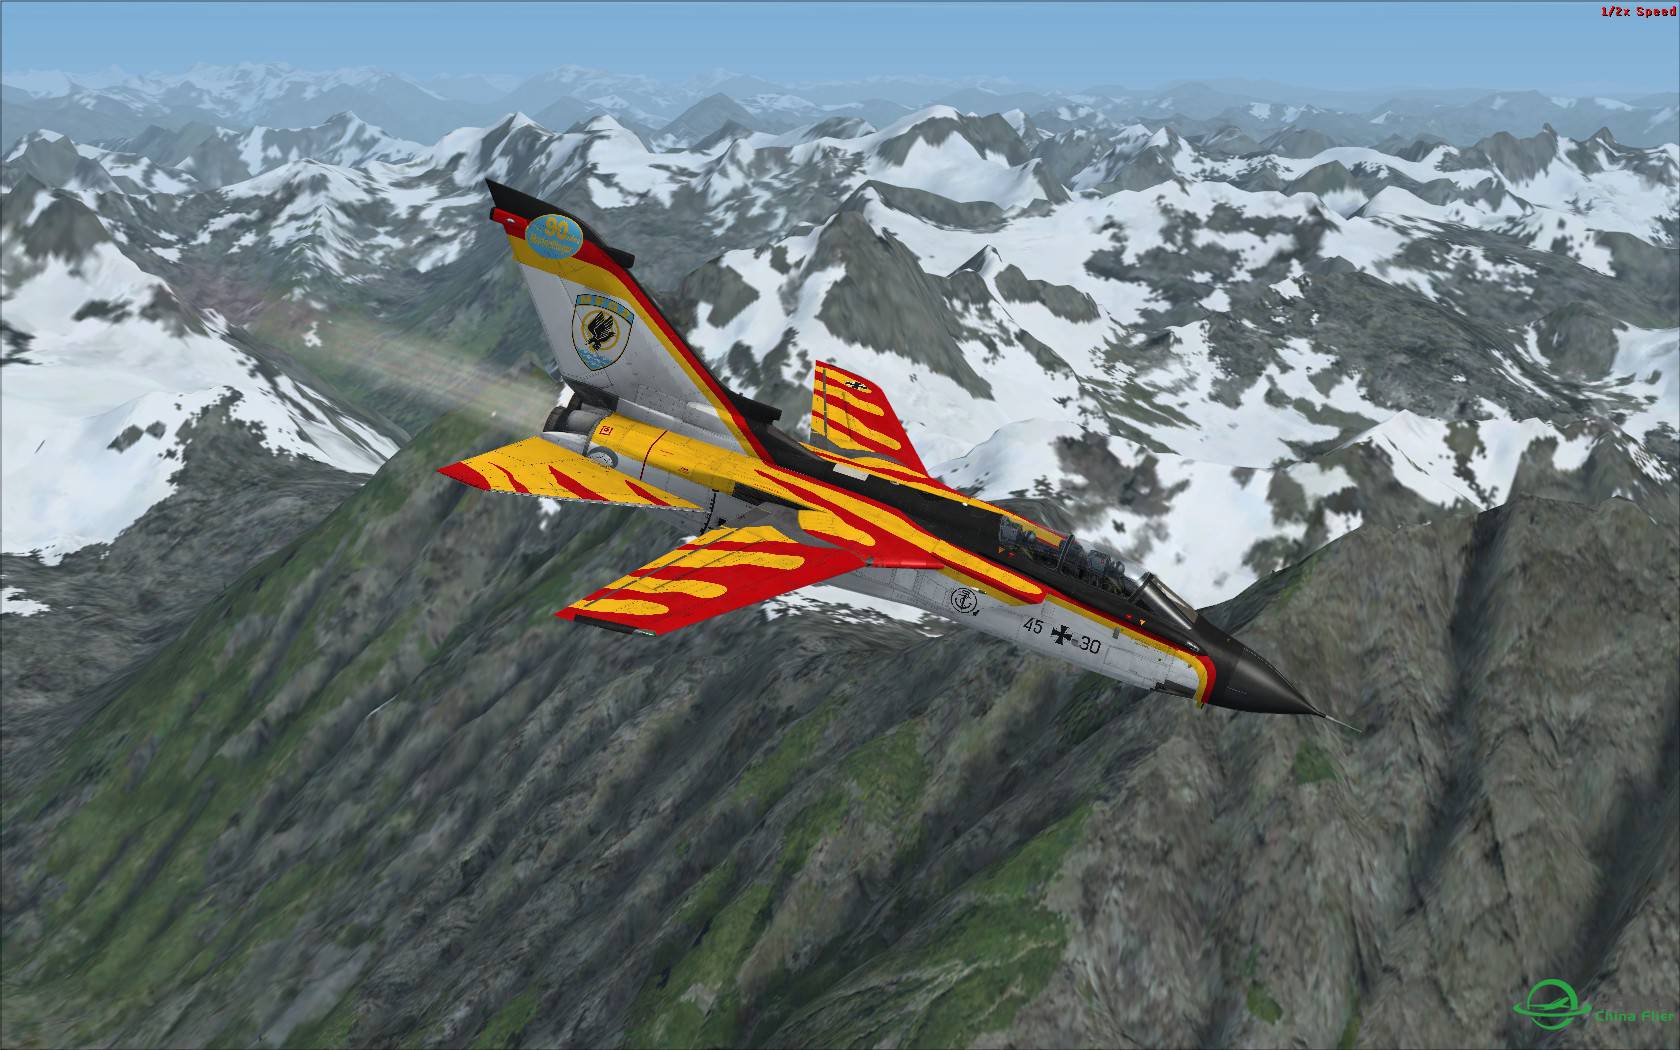 冰与火之歌:最新Just Flight狂风战机火红涂装与蓝色北美冰...-3139 